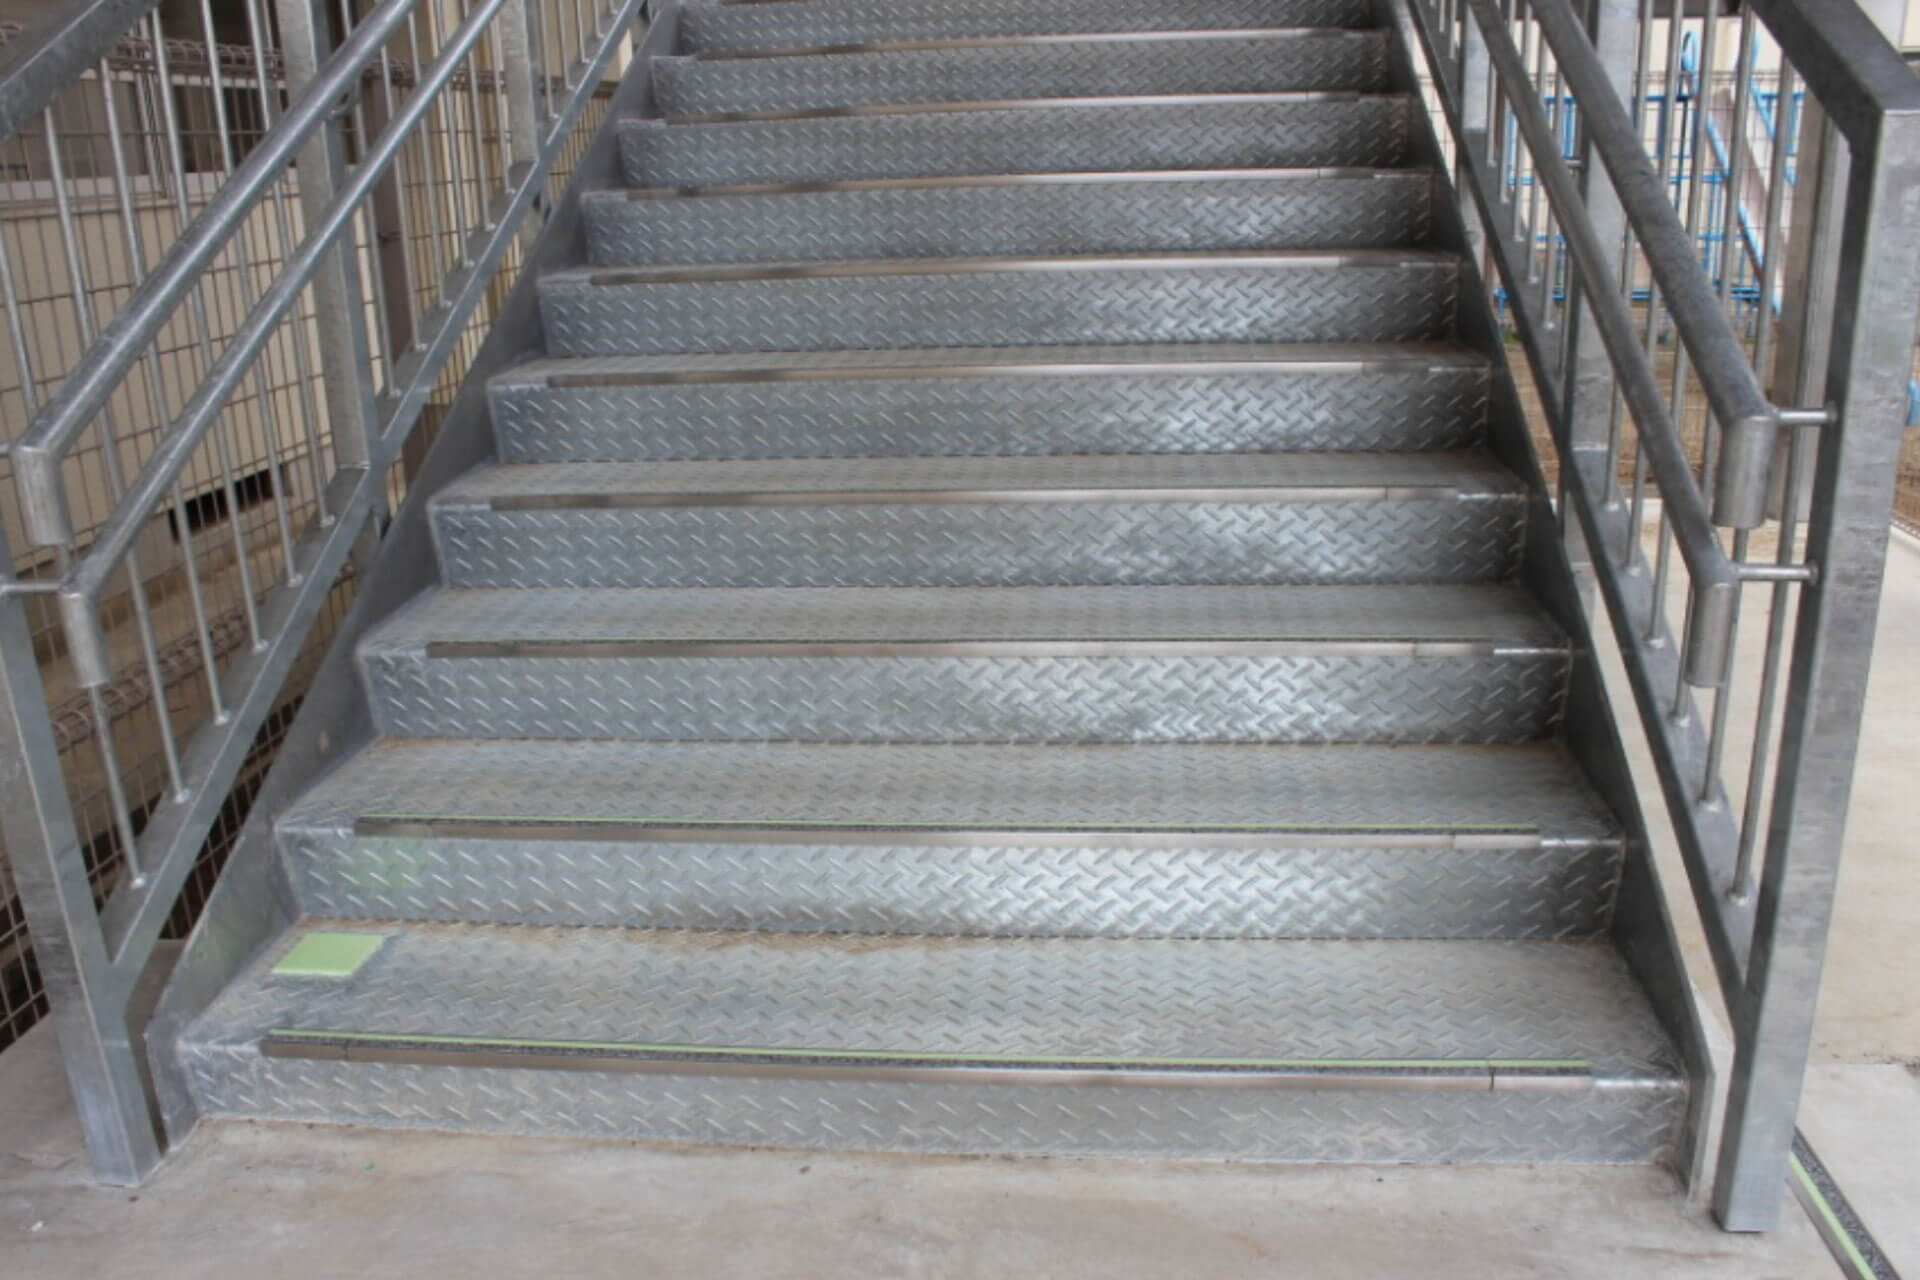 高知市立潮江小学校に施工された明視下のハイブリッドストーン アベイラス ステップ（高輝度蓄光式防滑階段材）を下から見た角度